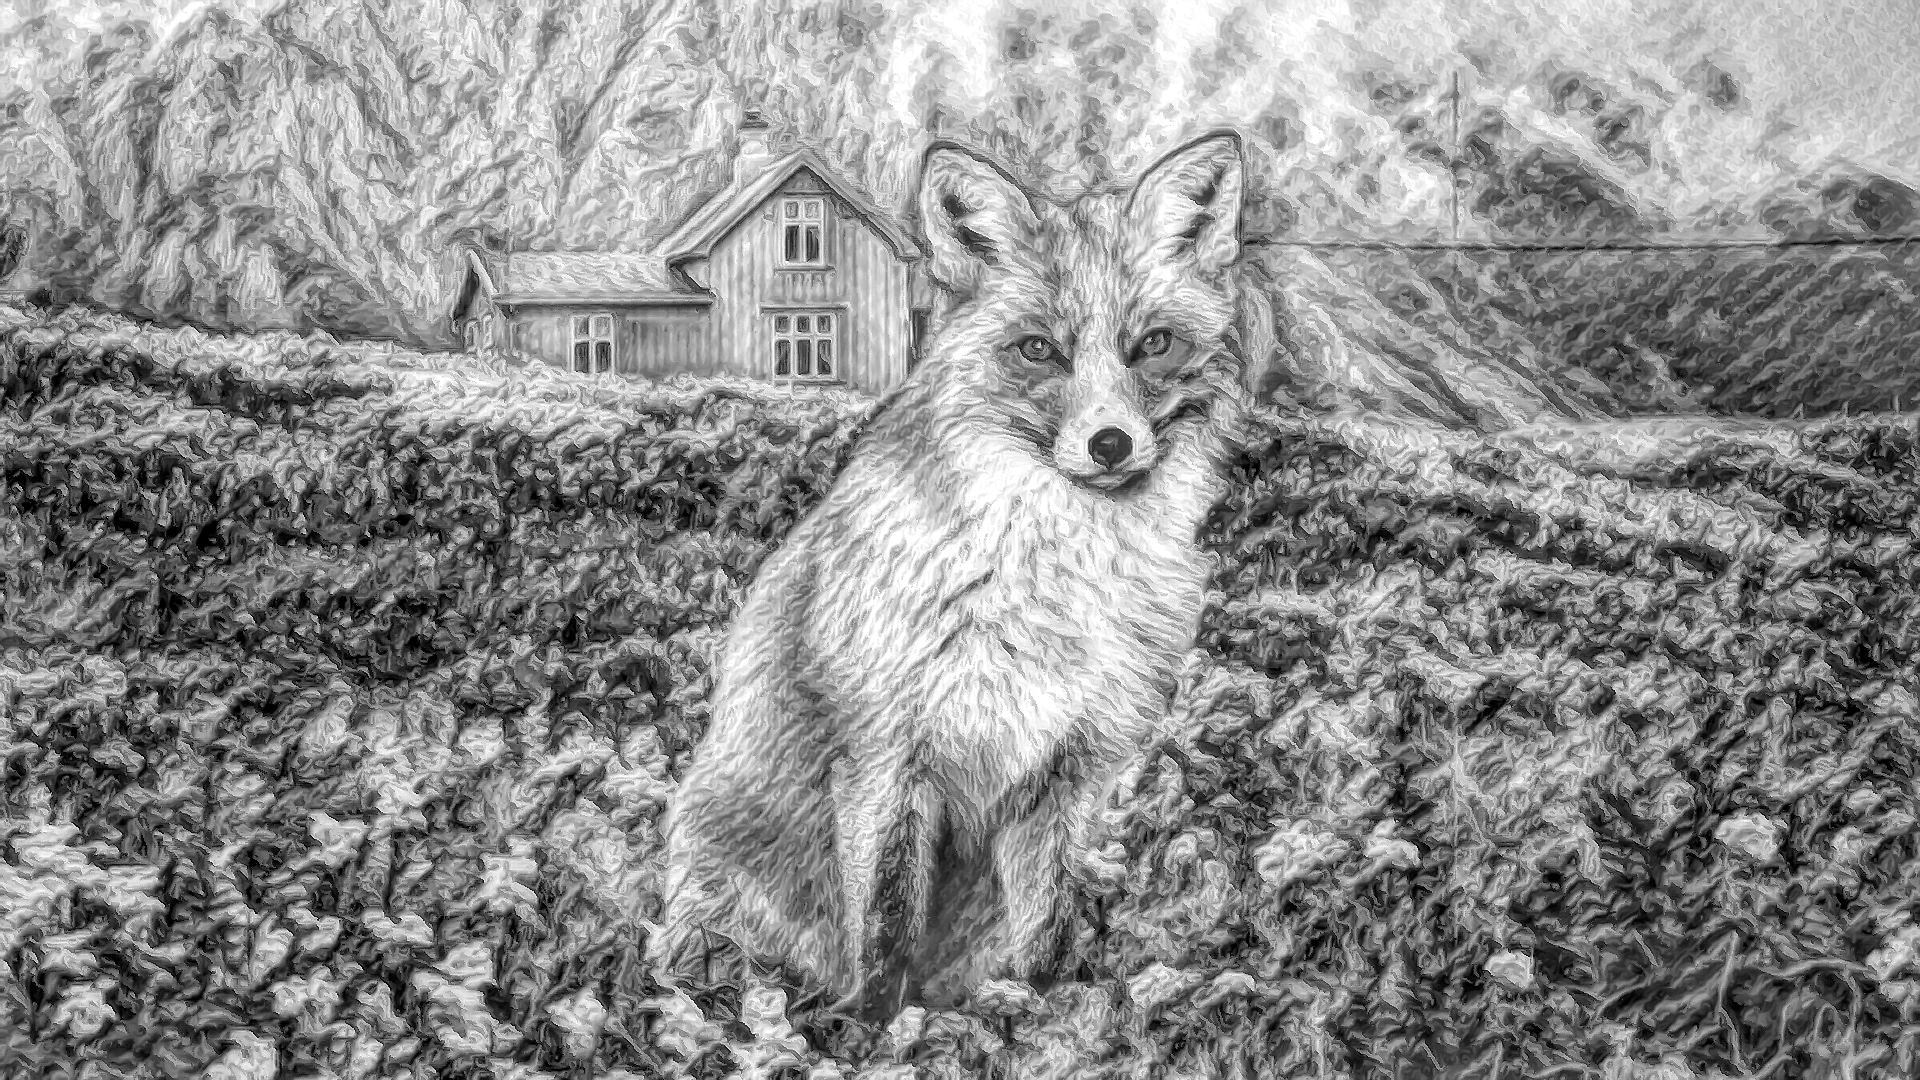 無料壁紙 背景画像素材 美しく綺麗な自然と森林と狐のイラスト Free Illustlation くりえいてぃぶ